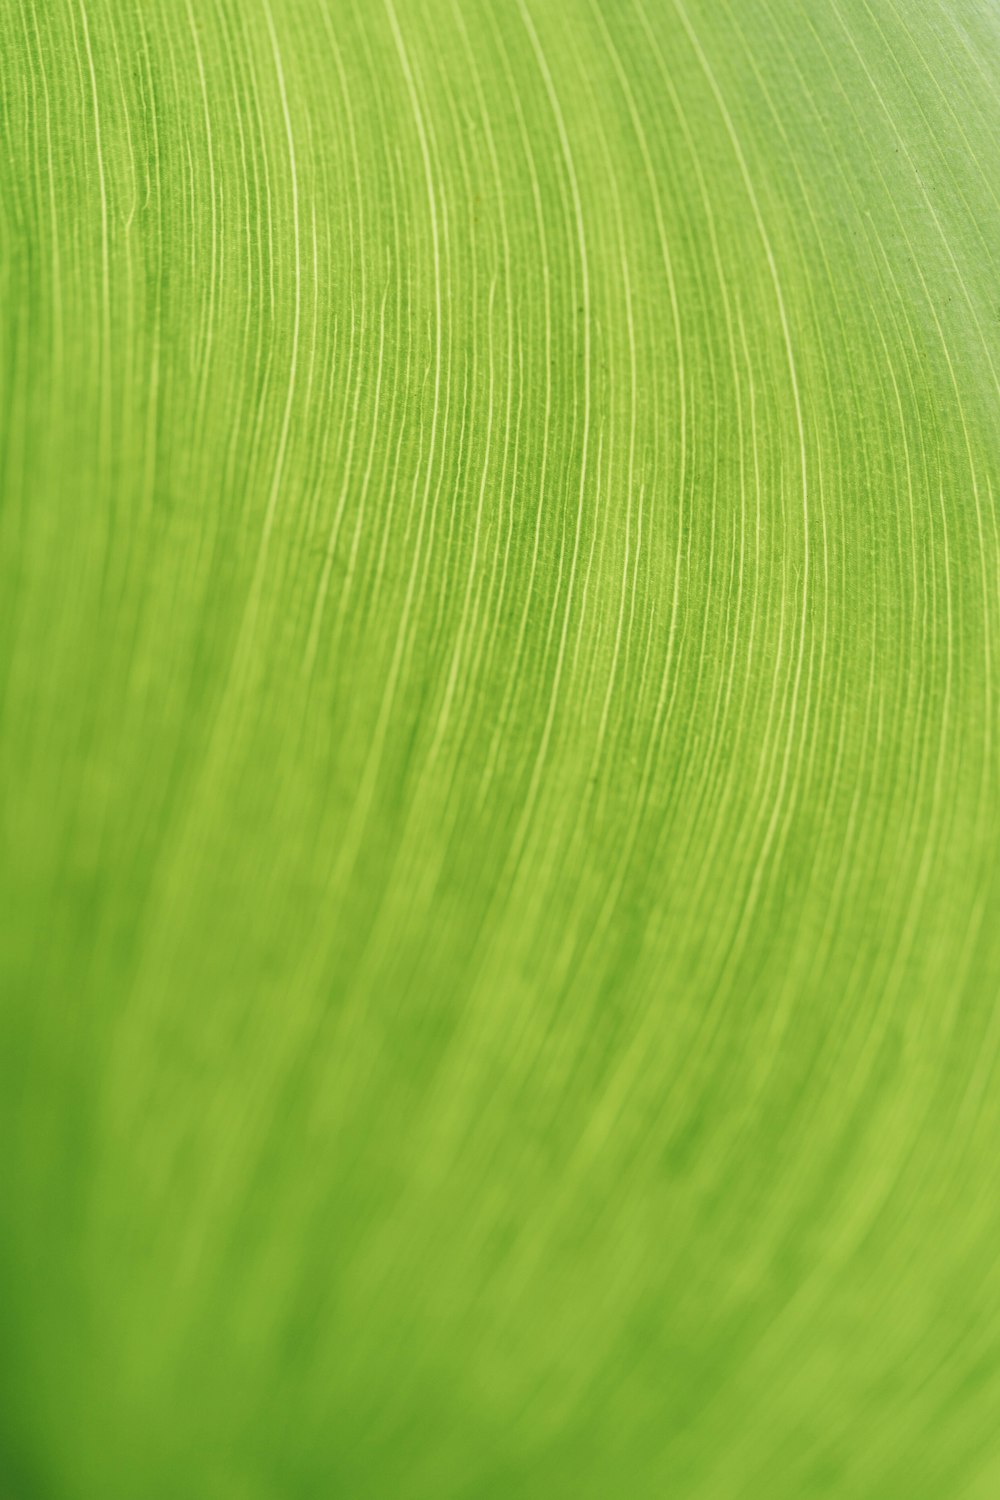 um close up de uma textura de folha verde